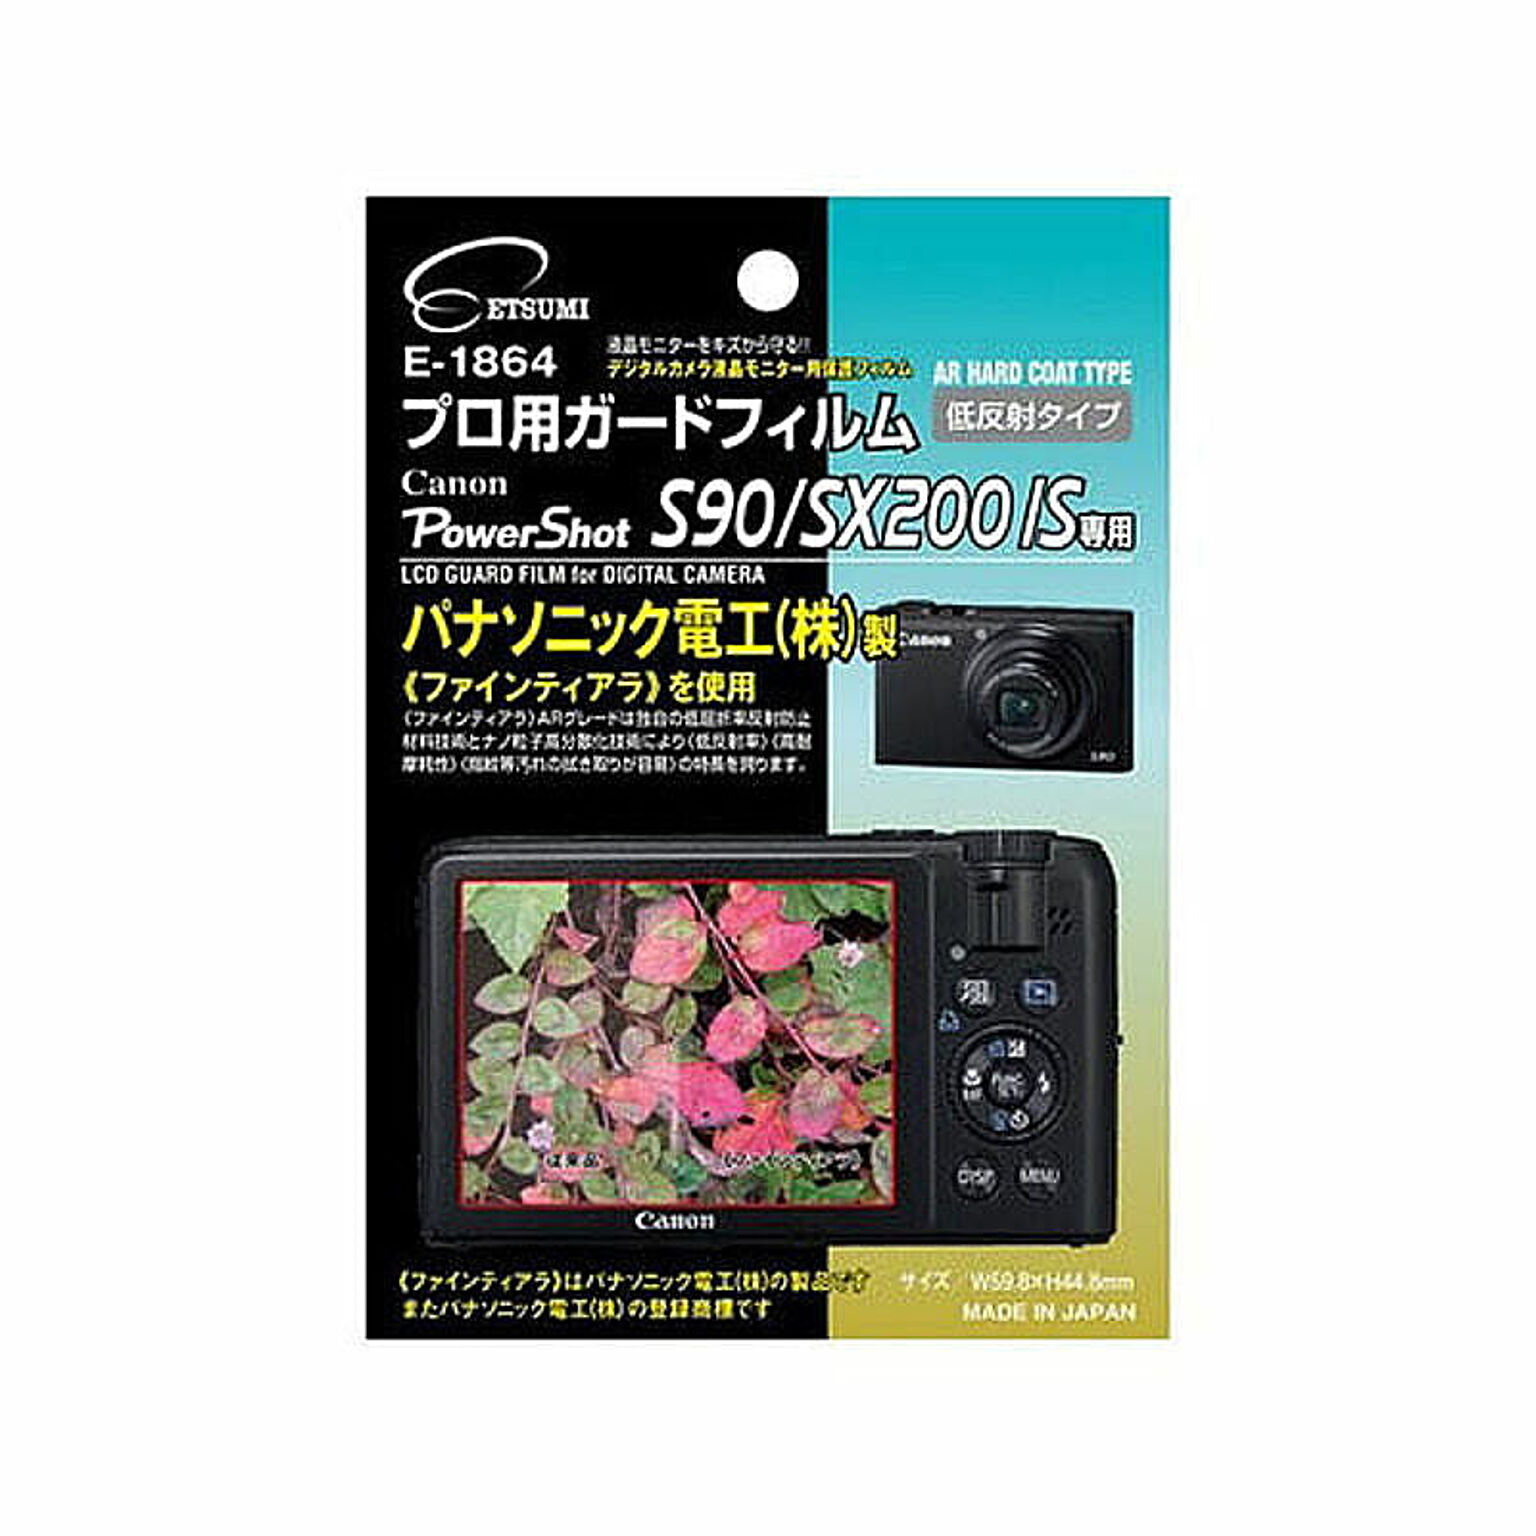 エツミ プロ用ガードフィルムAR Canon PowerShot S90/SX200IS専用 E-1864 管理No. 4975981186493